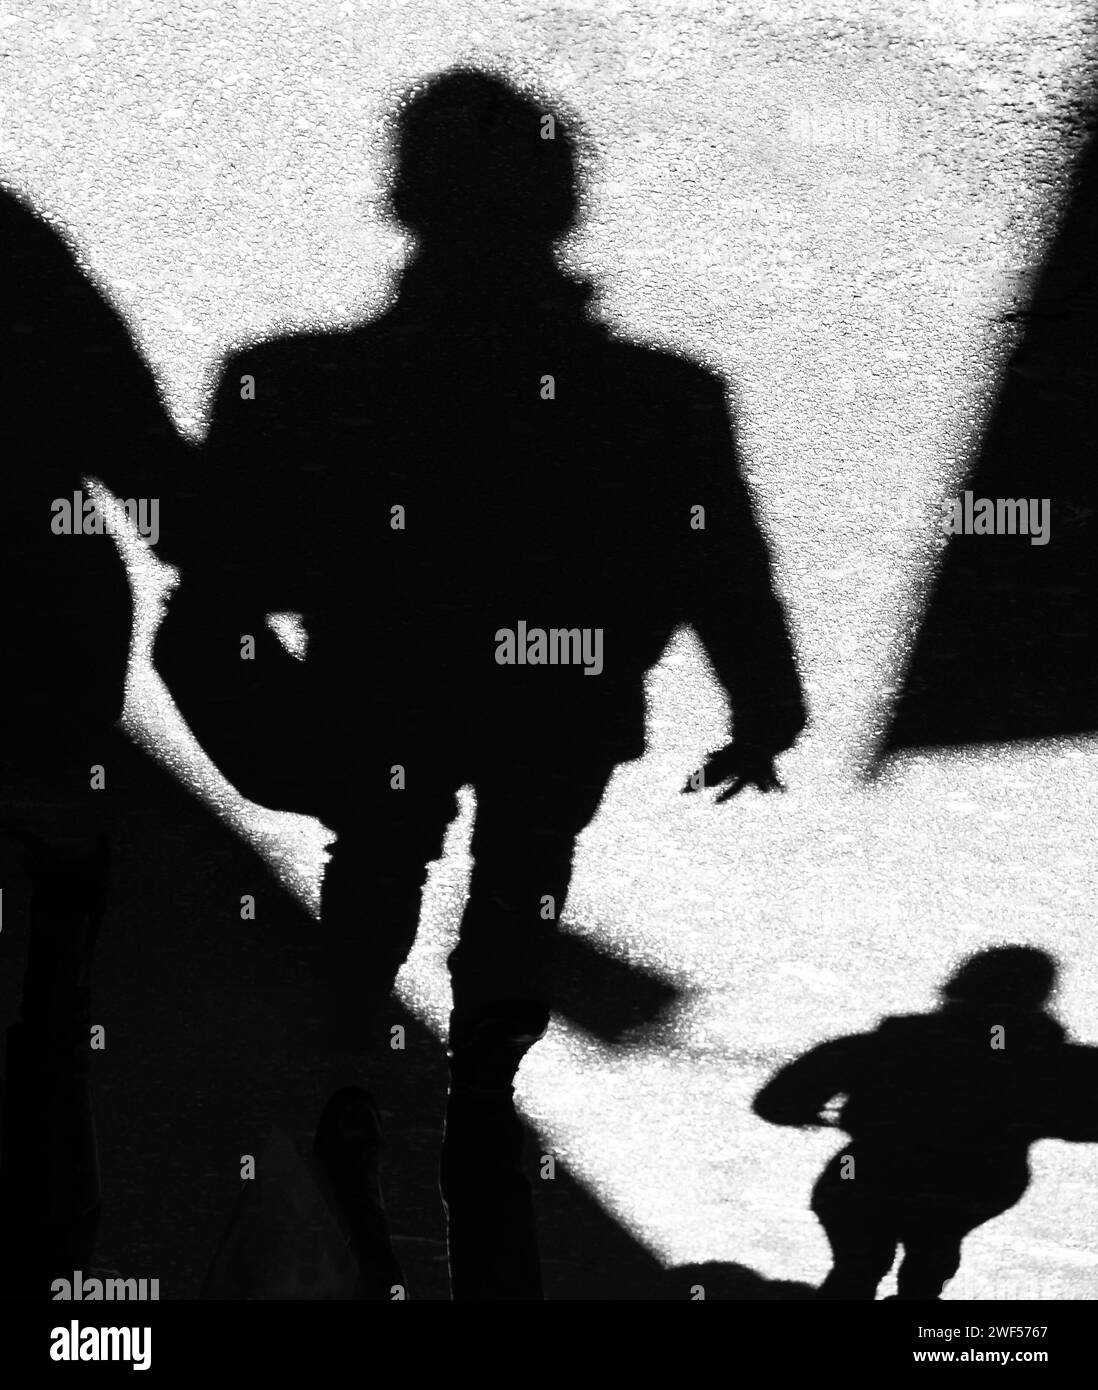 Silhouette d'ombre de gens méconnaissables marchant dans la rue de la ville, en noir et blanc Banque D'Images